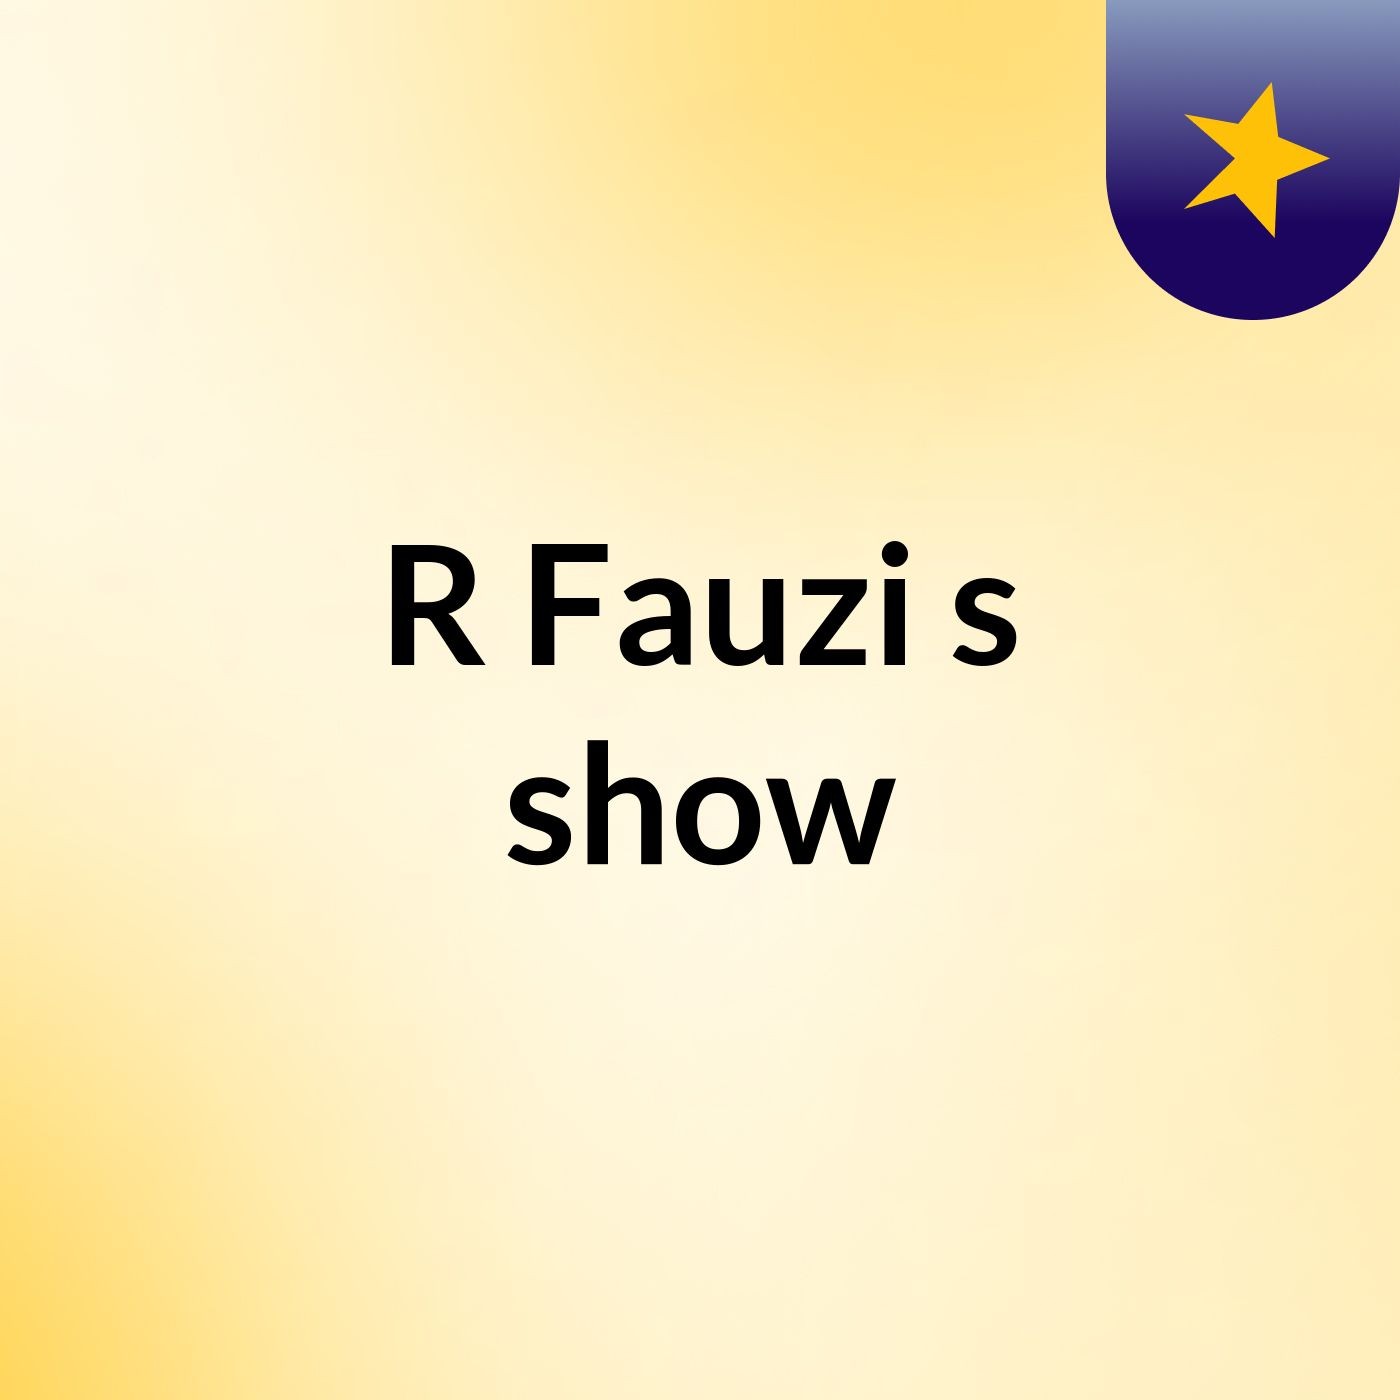 R Fauzi's show